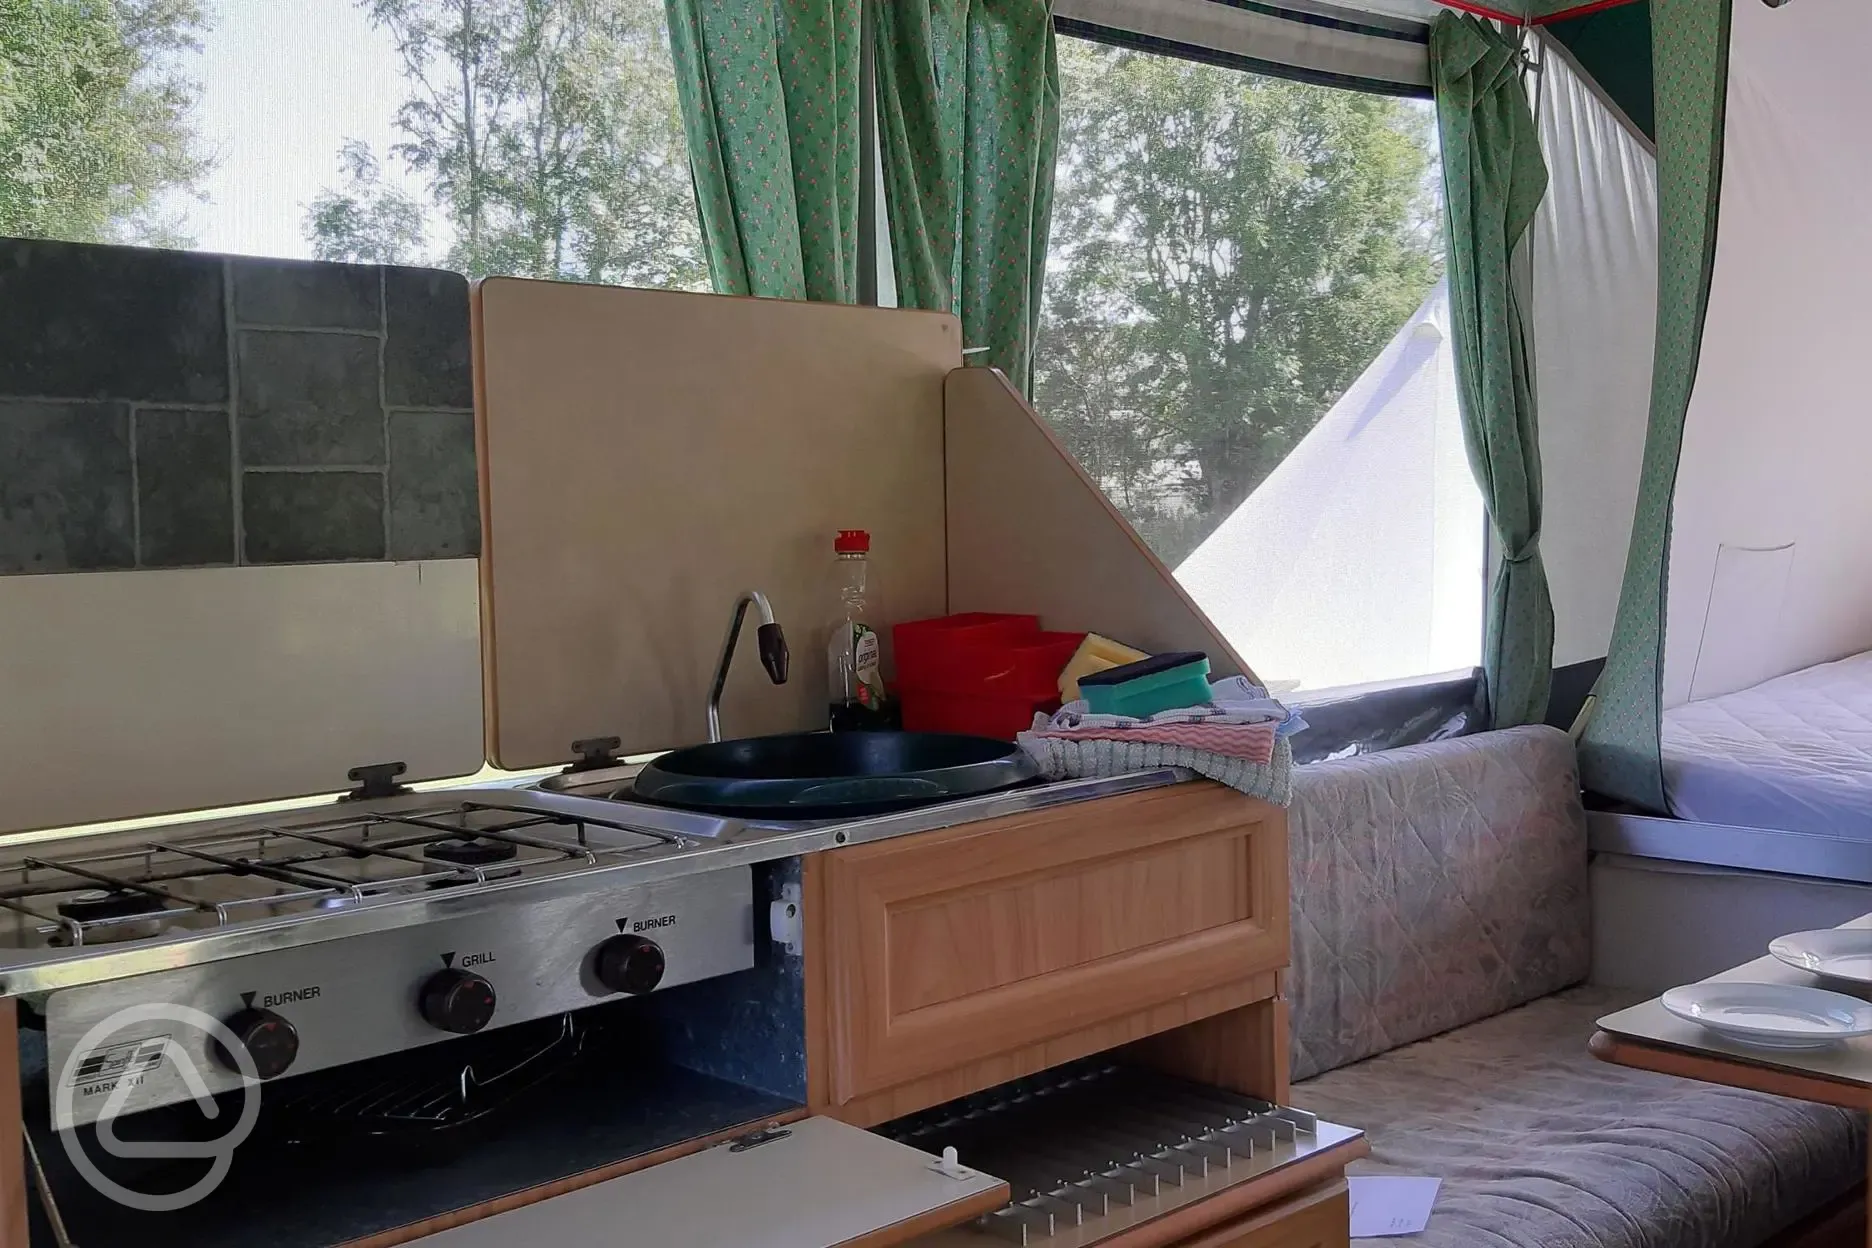 Kitchen in trailer tent